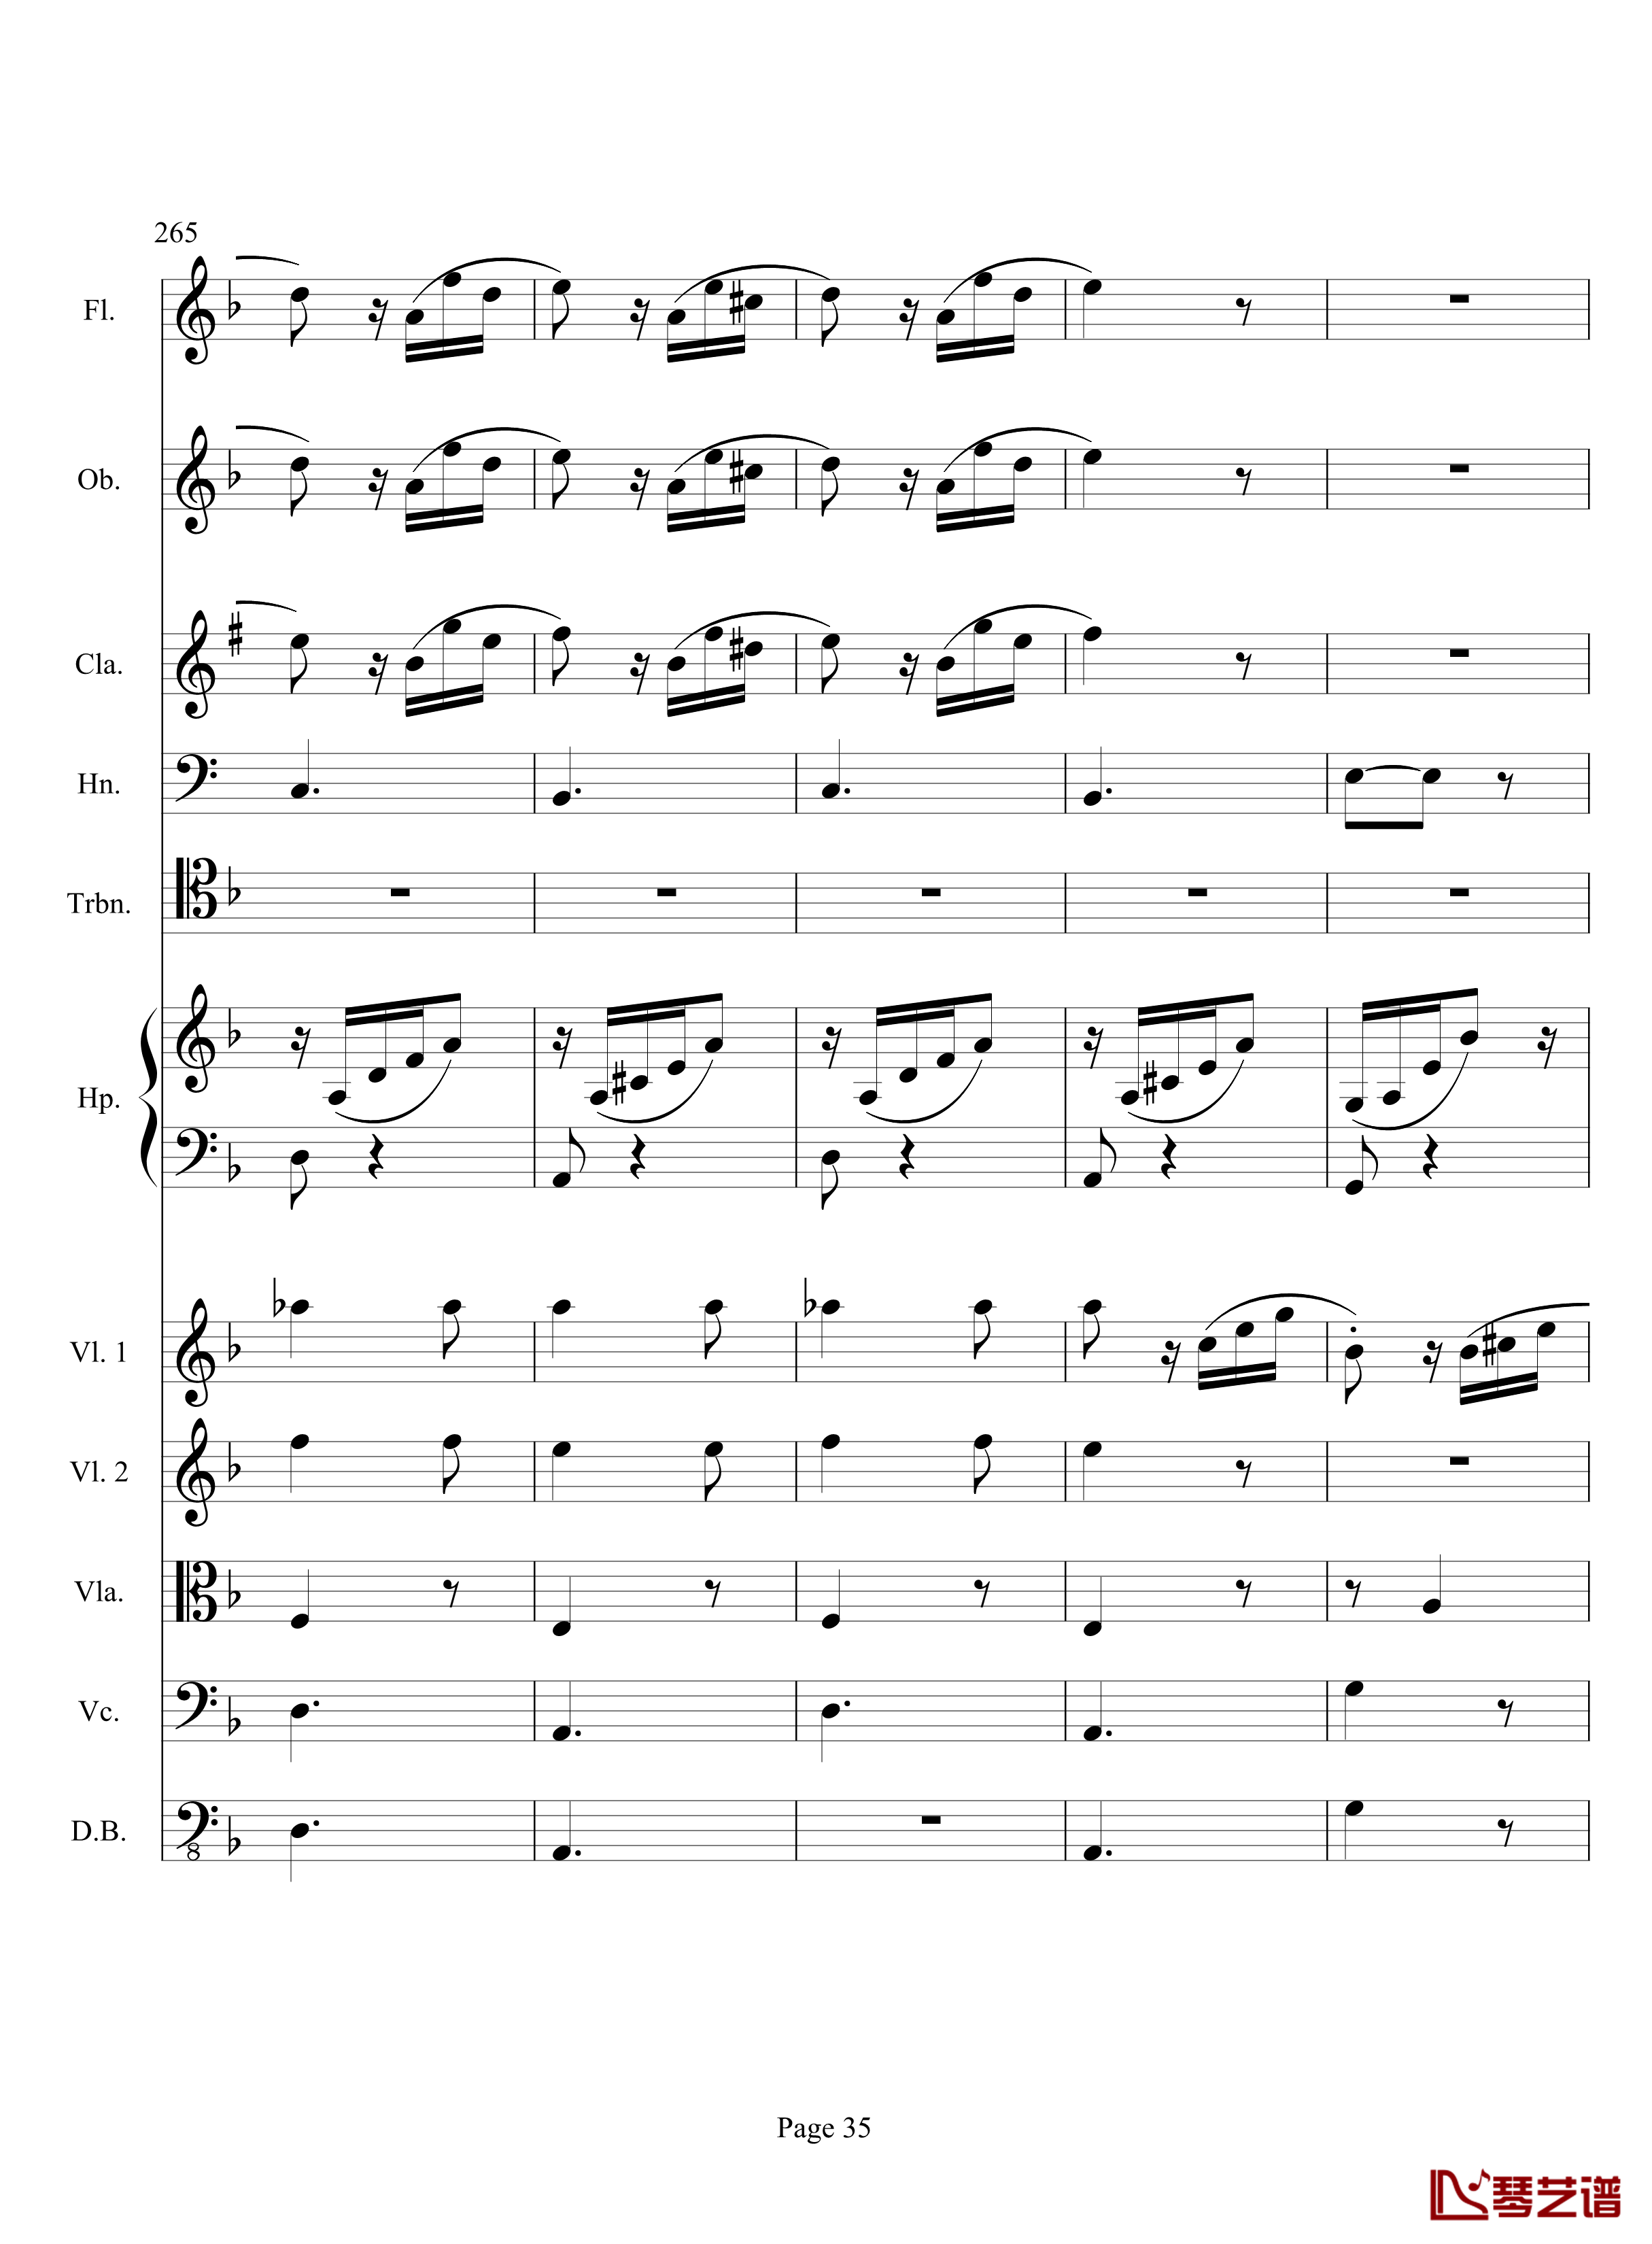 奏鸣曲之交响钢琴谱-第17首-Ⅲ-贝多芬-beethoven35